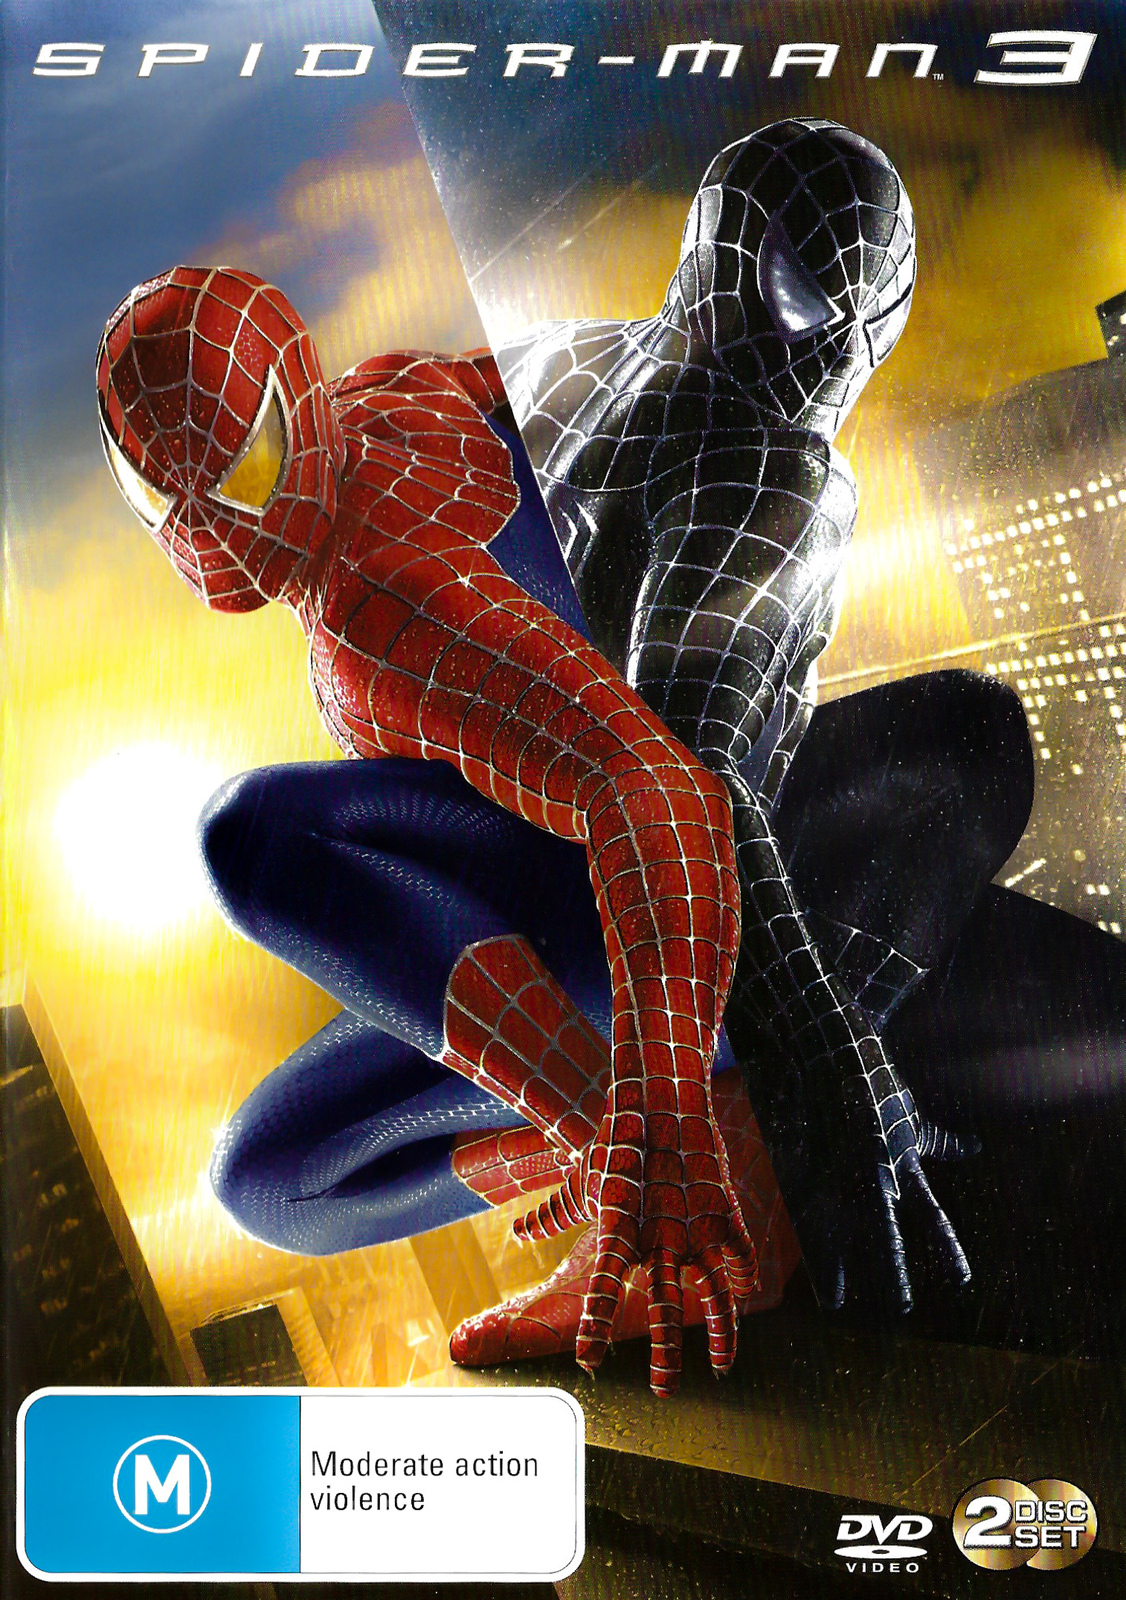 Spider-Man 3 -Rare DVD Aus Stock -Family New Region 4 - Aussie DVDs